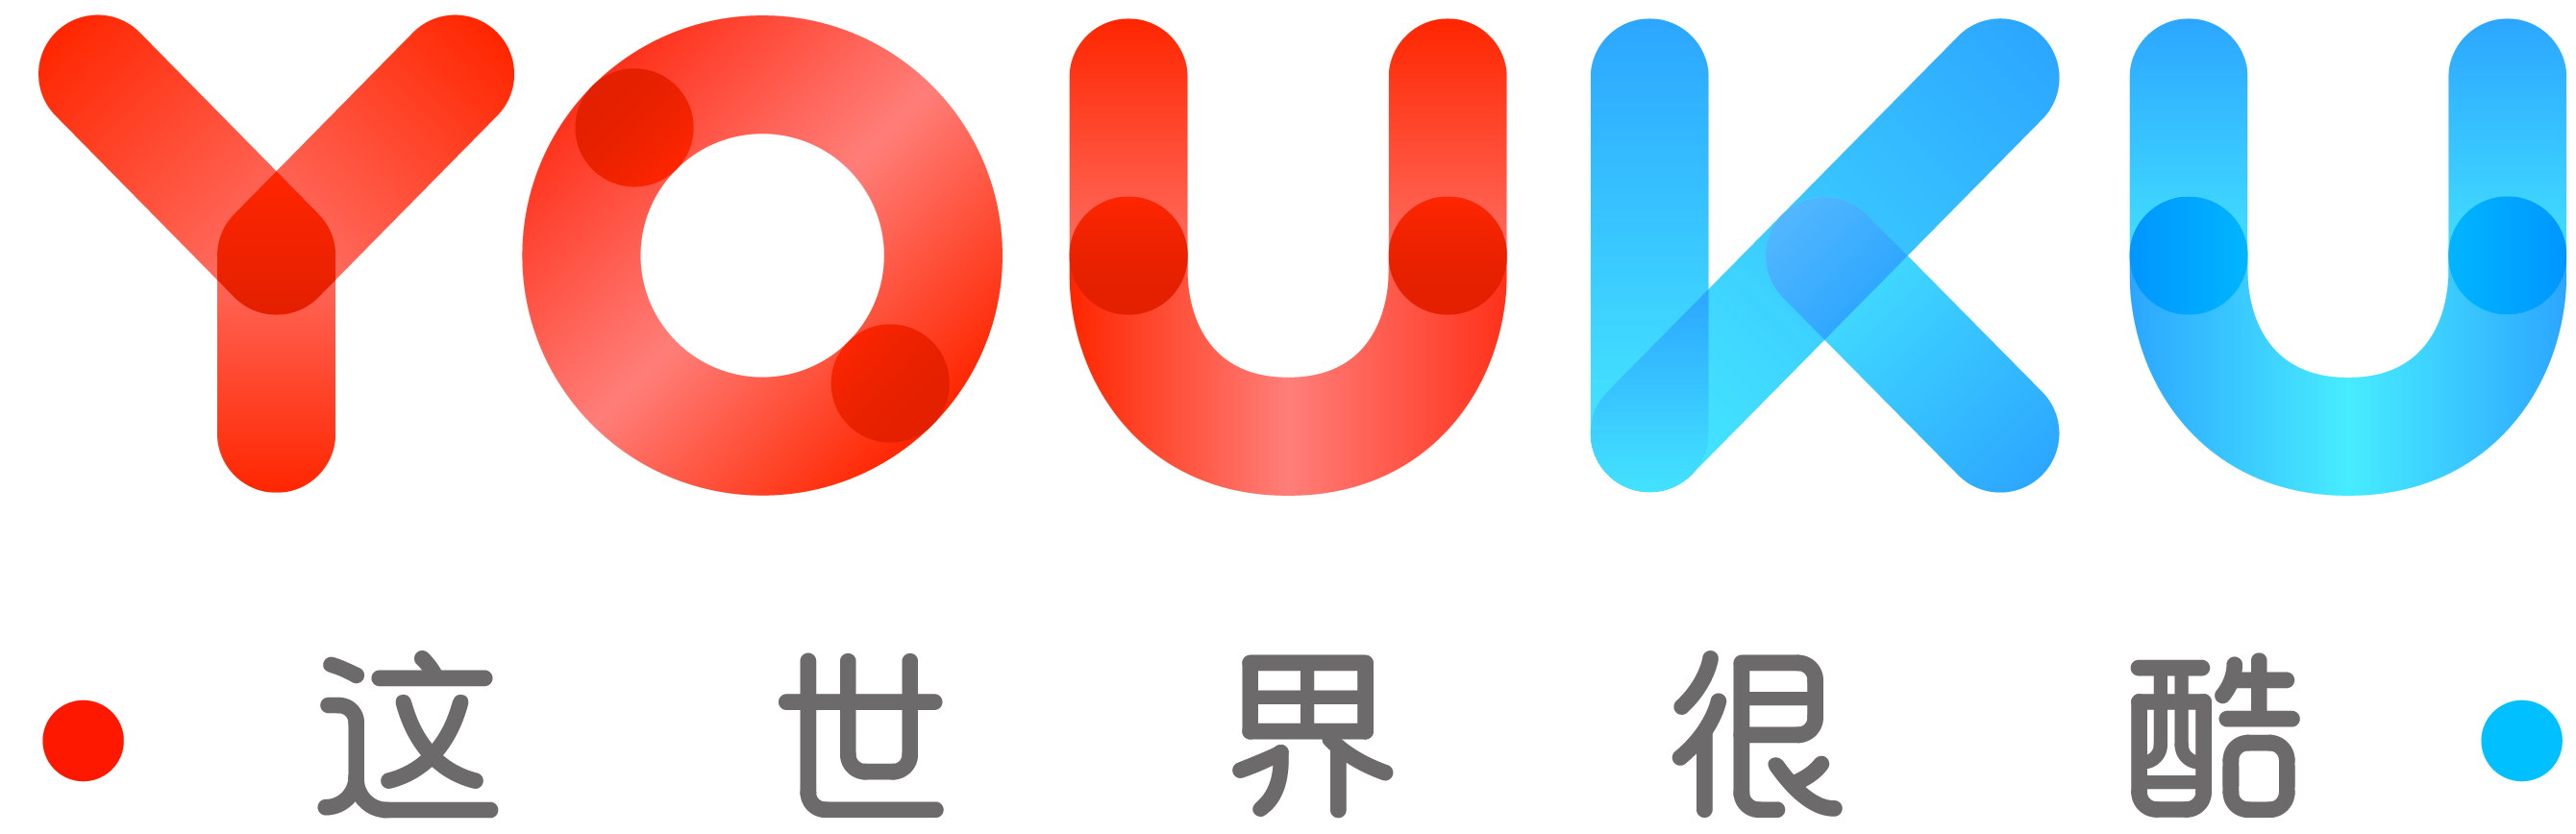 Youku logo free icon